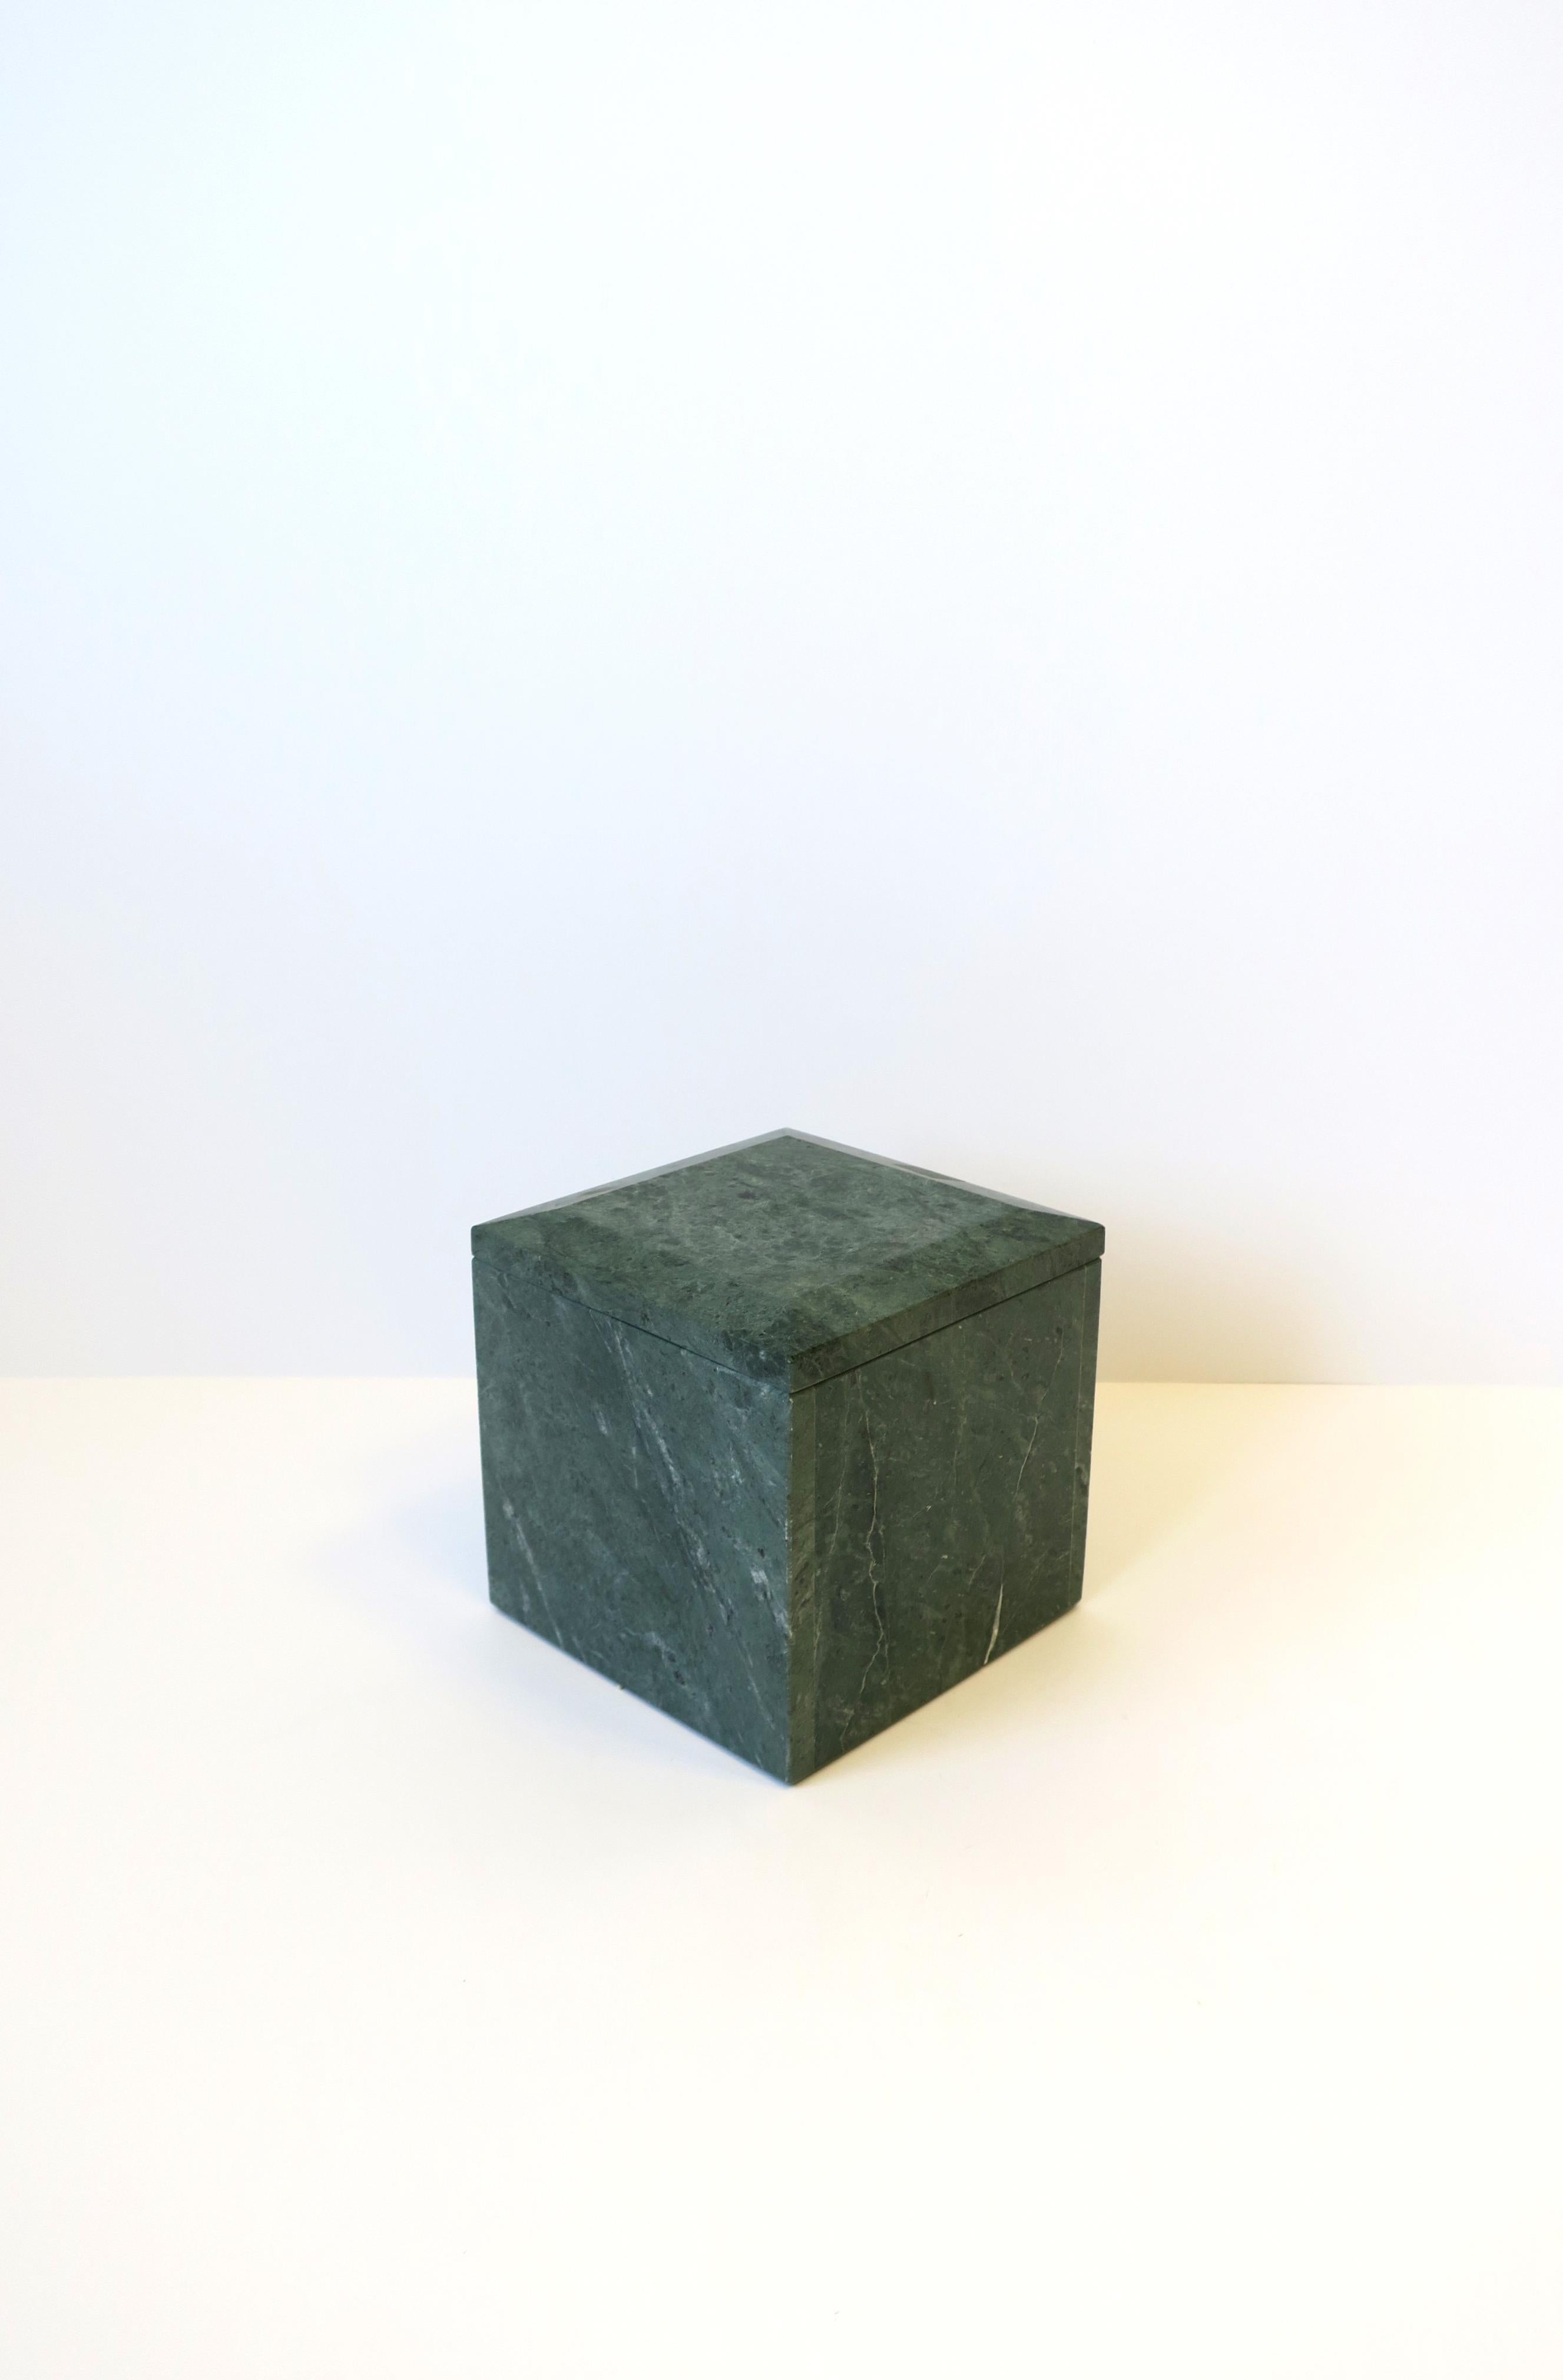 Une belle et substantielle boîte postmoderne italienne carrée en marbre vert Verde, vers les années 1970, Italie. Le marbre est principalement de couleur vert moyen et foncé avec des veines blanches. Le dessus a un bord biseauté. La pièce peut